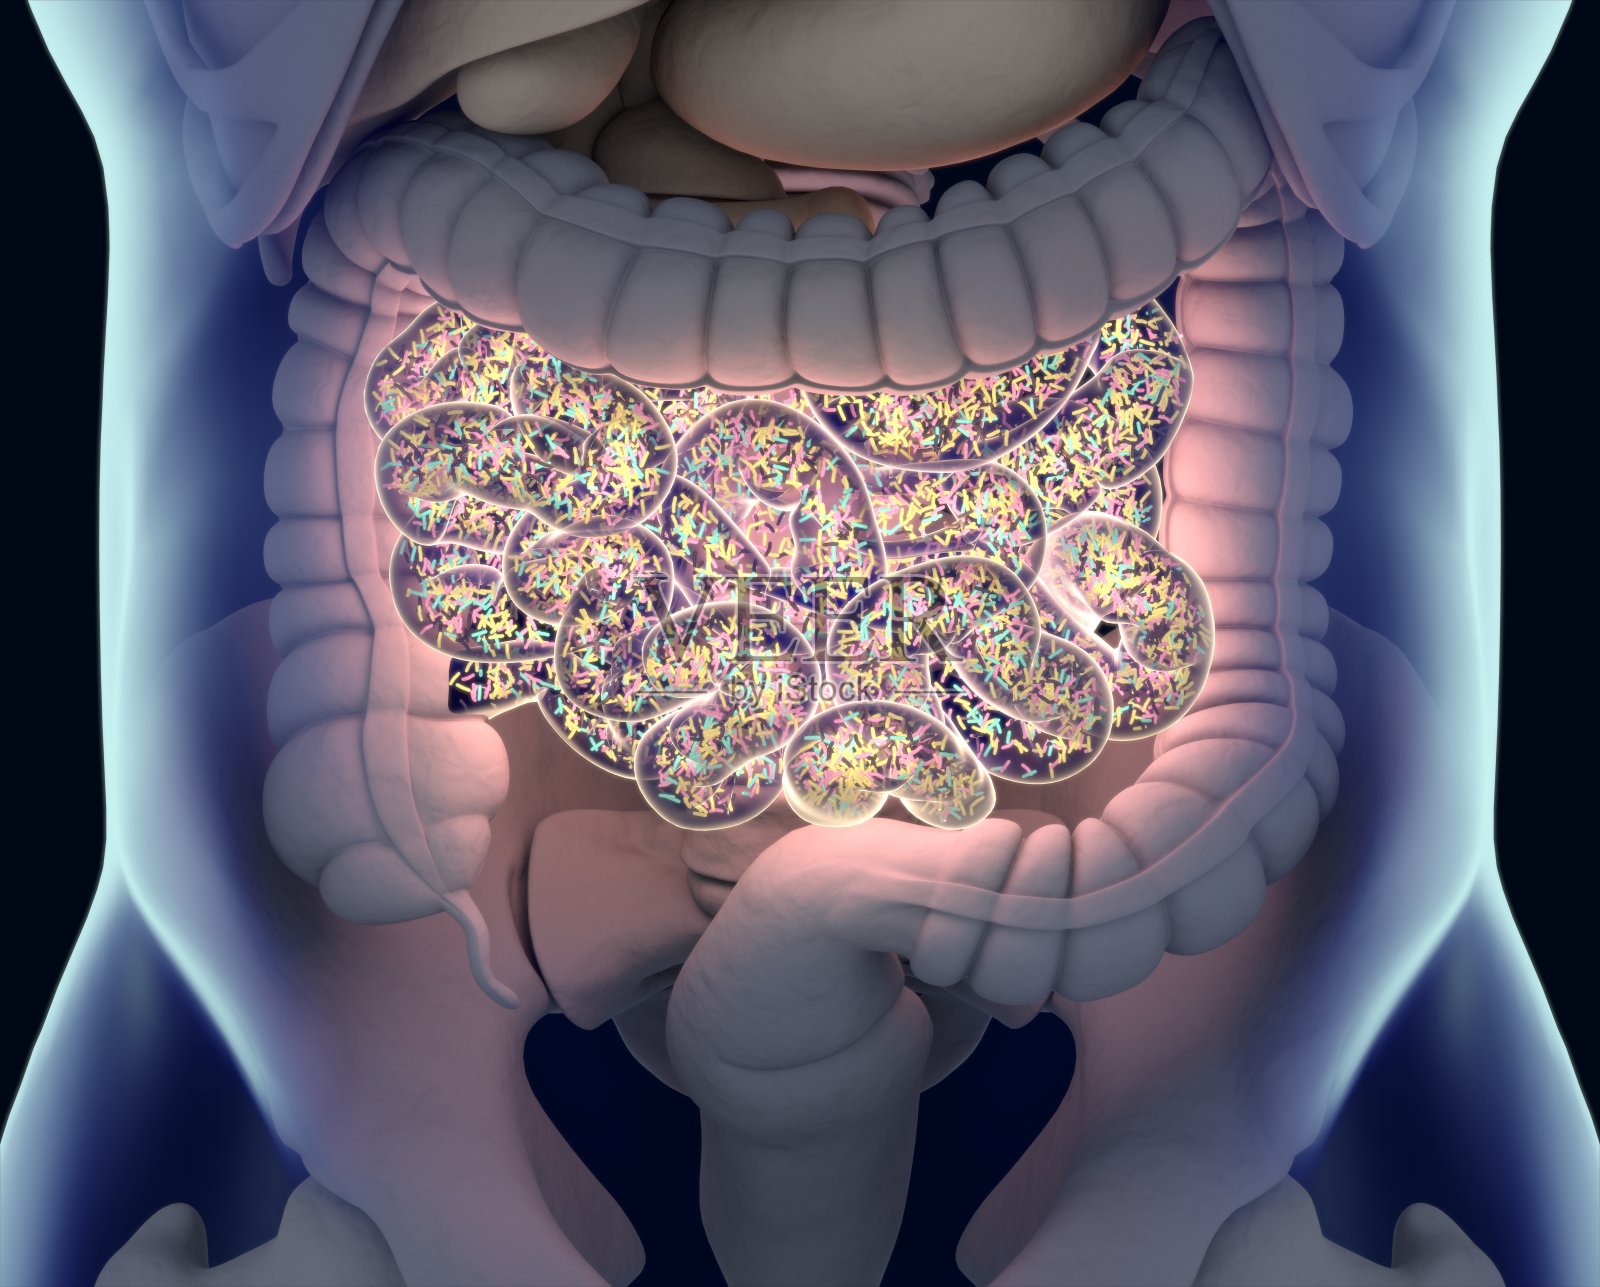 五、小肠-人体解剖学与组织胚胎学-医学